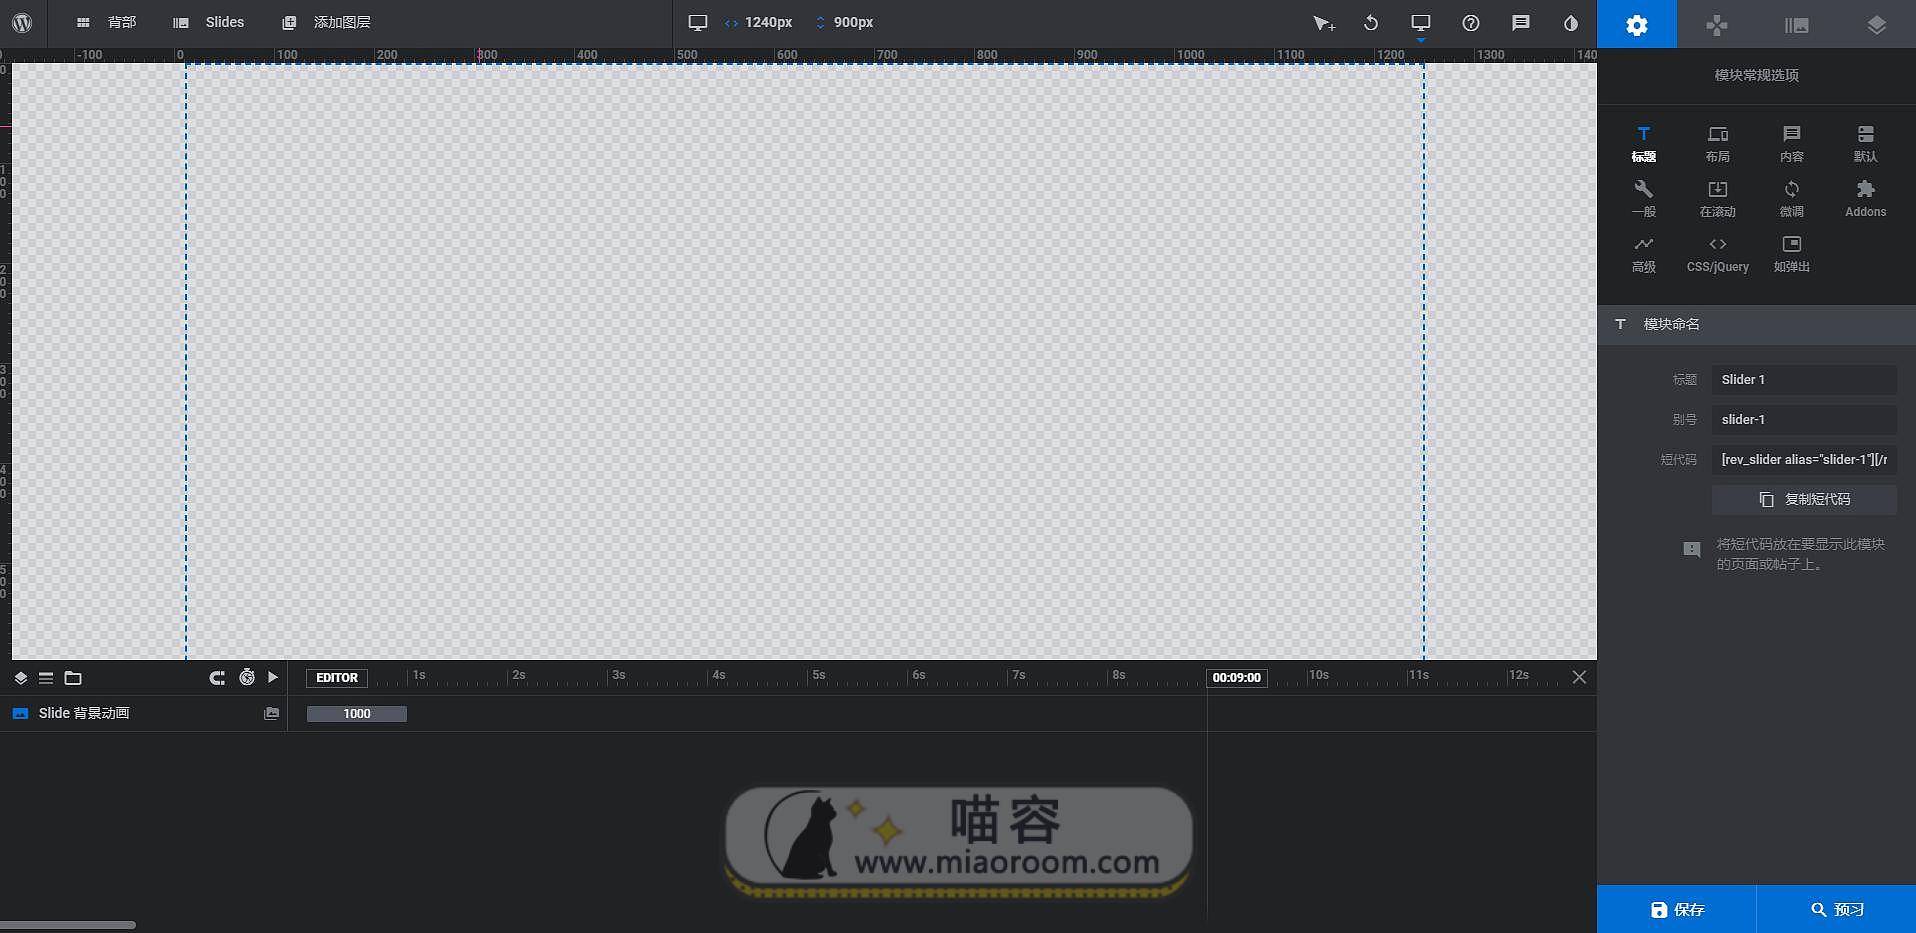 「WP插件」 最强WP轮播图插件 Slider Revolution v6.2.2 专业版+破解+中文汉化【已更新】